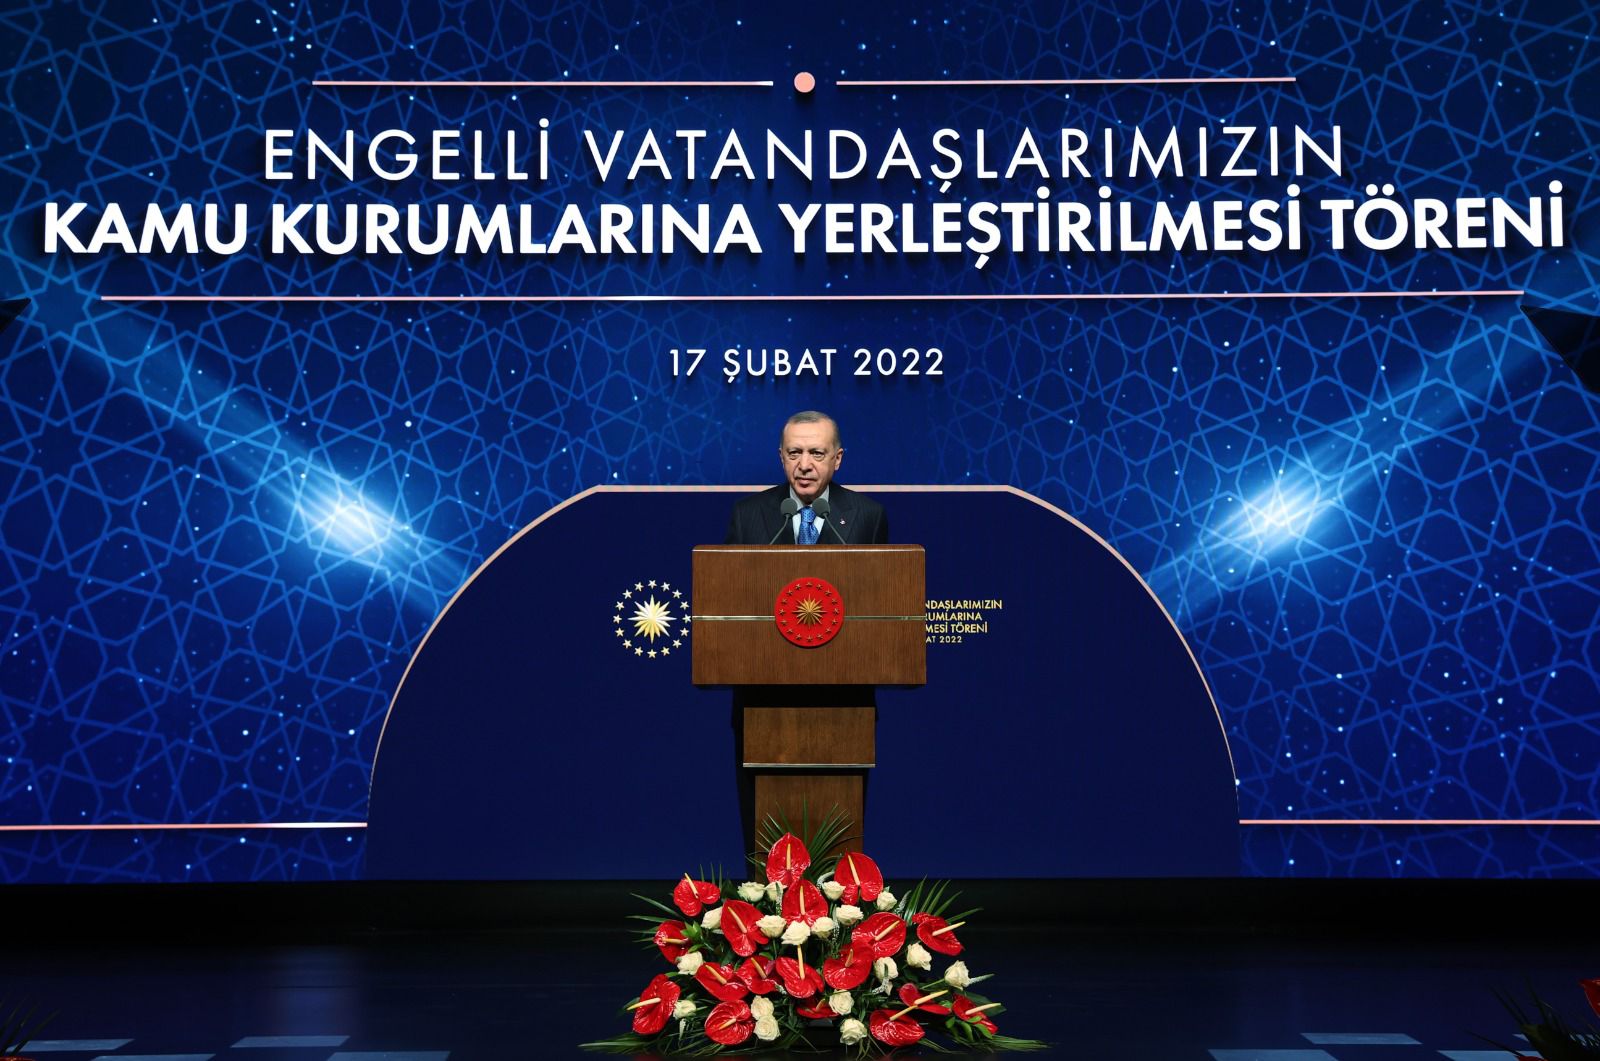 Cumhurbaşkanı Erdoğan ve Bakanımız Derya Yanık'ın Katılımıyla "Engellilerin Kamu Kurumlarına Yerleştirilmesi" Töreni Düzenlendi